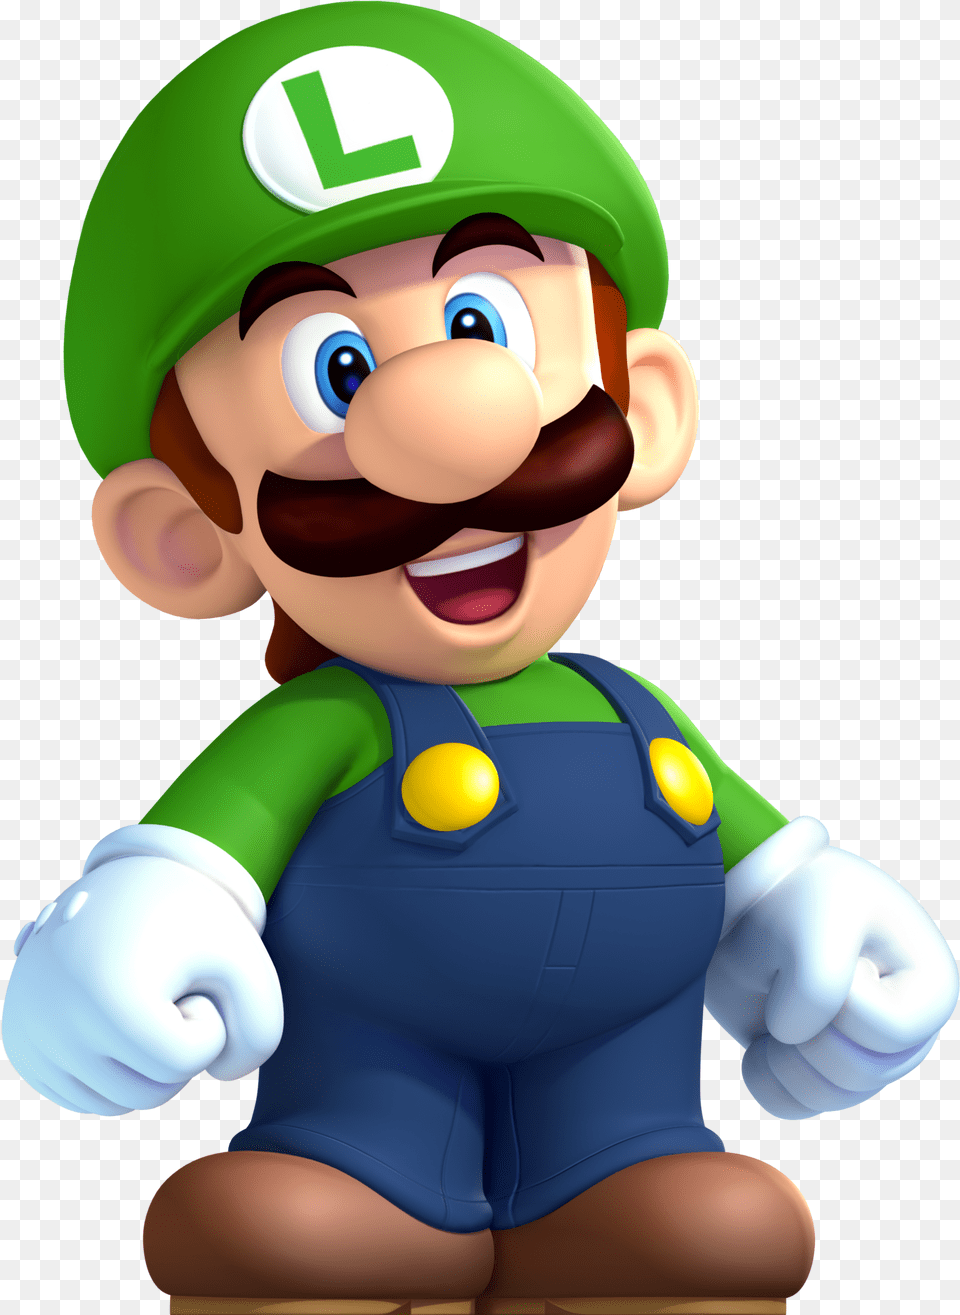 Luigi Face Luigi Mario, Game, Super Mario, Baby, Person Free Transparent Png